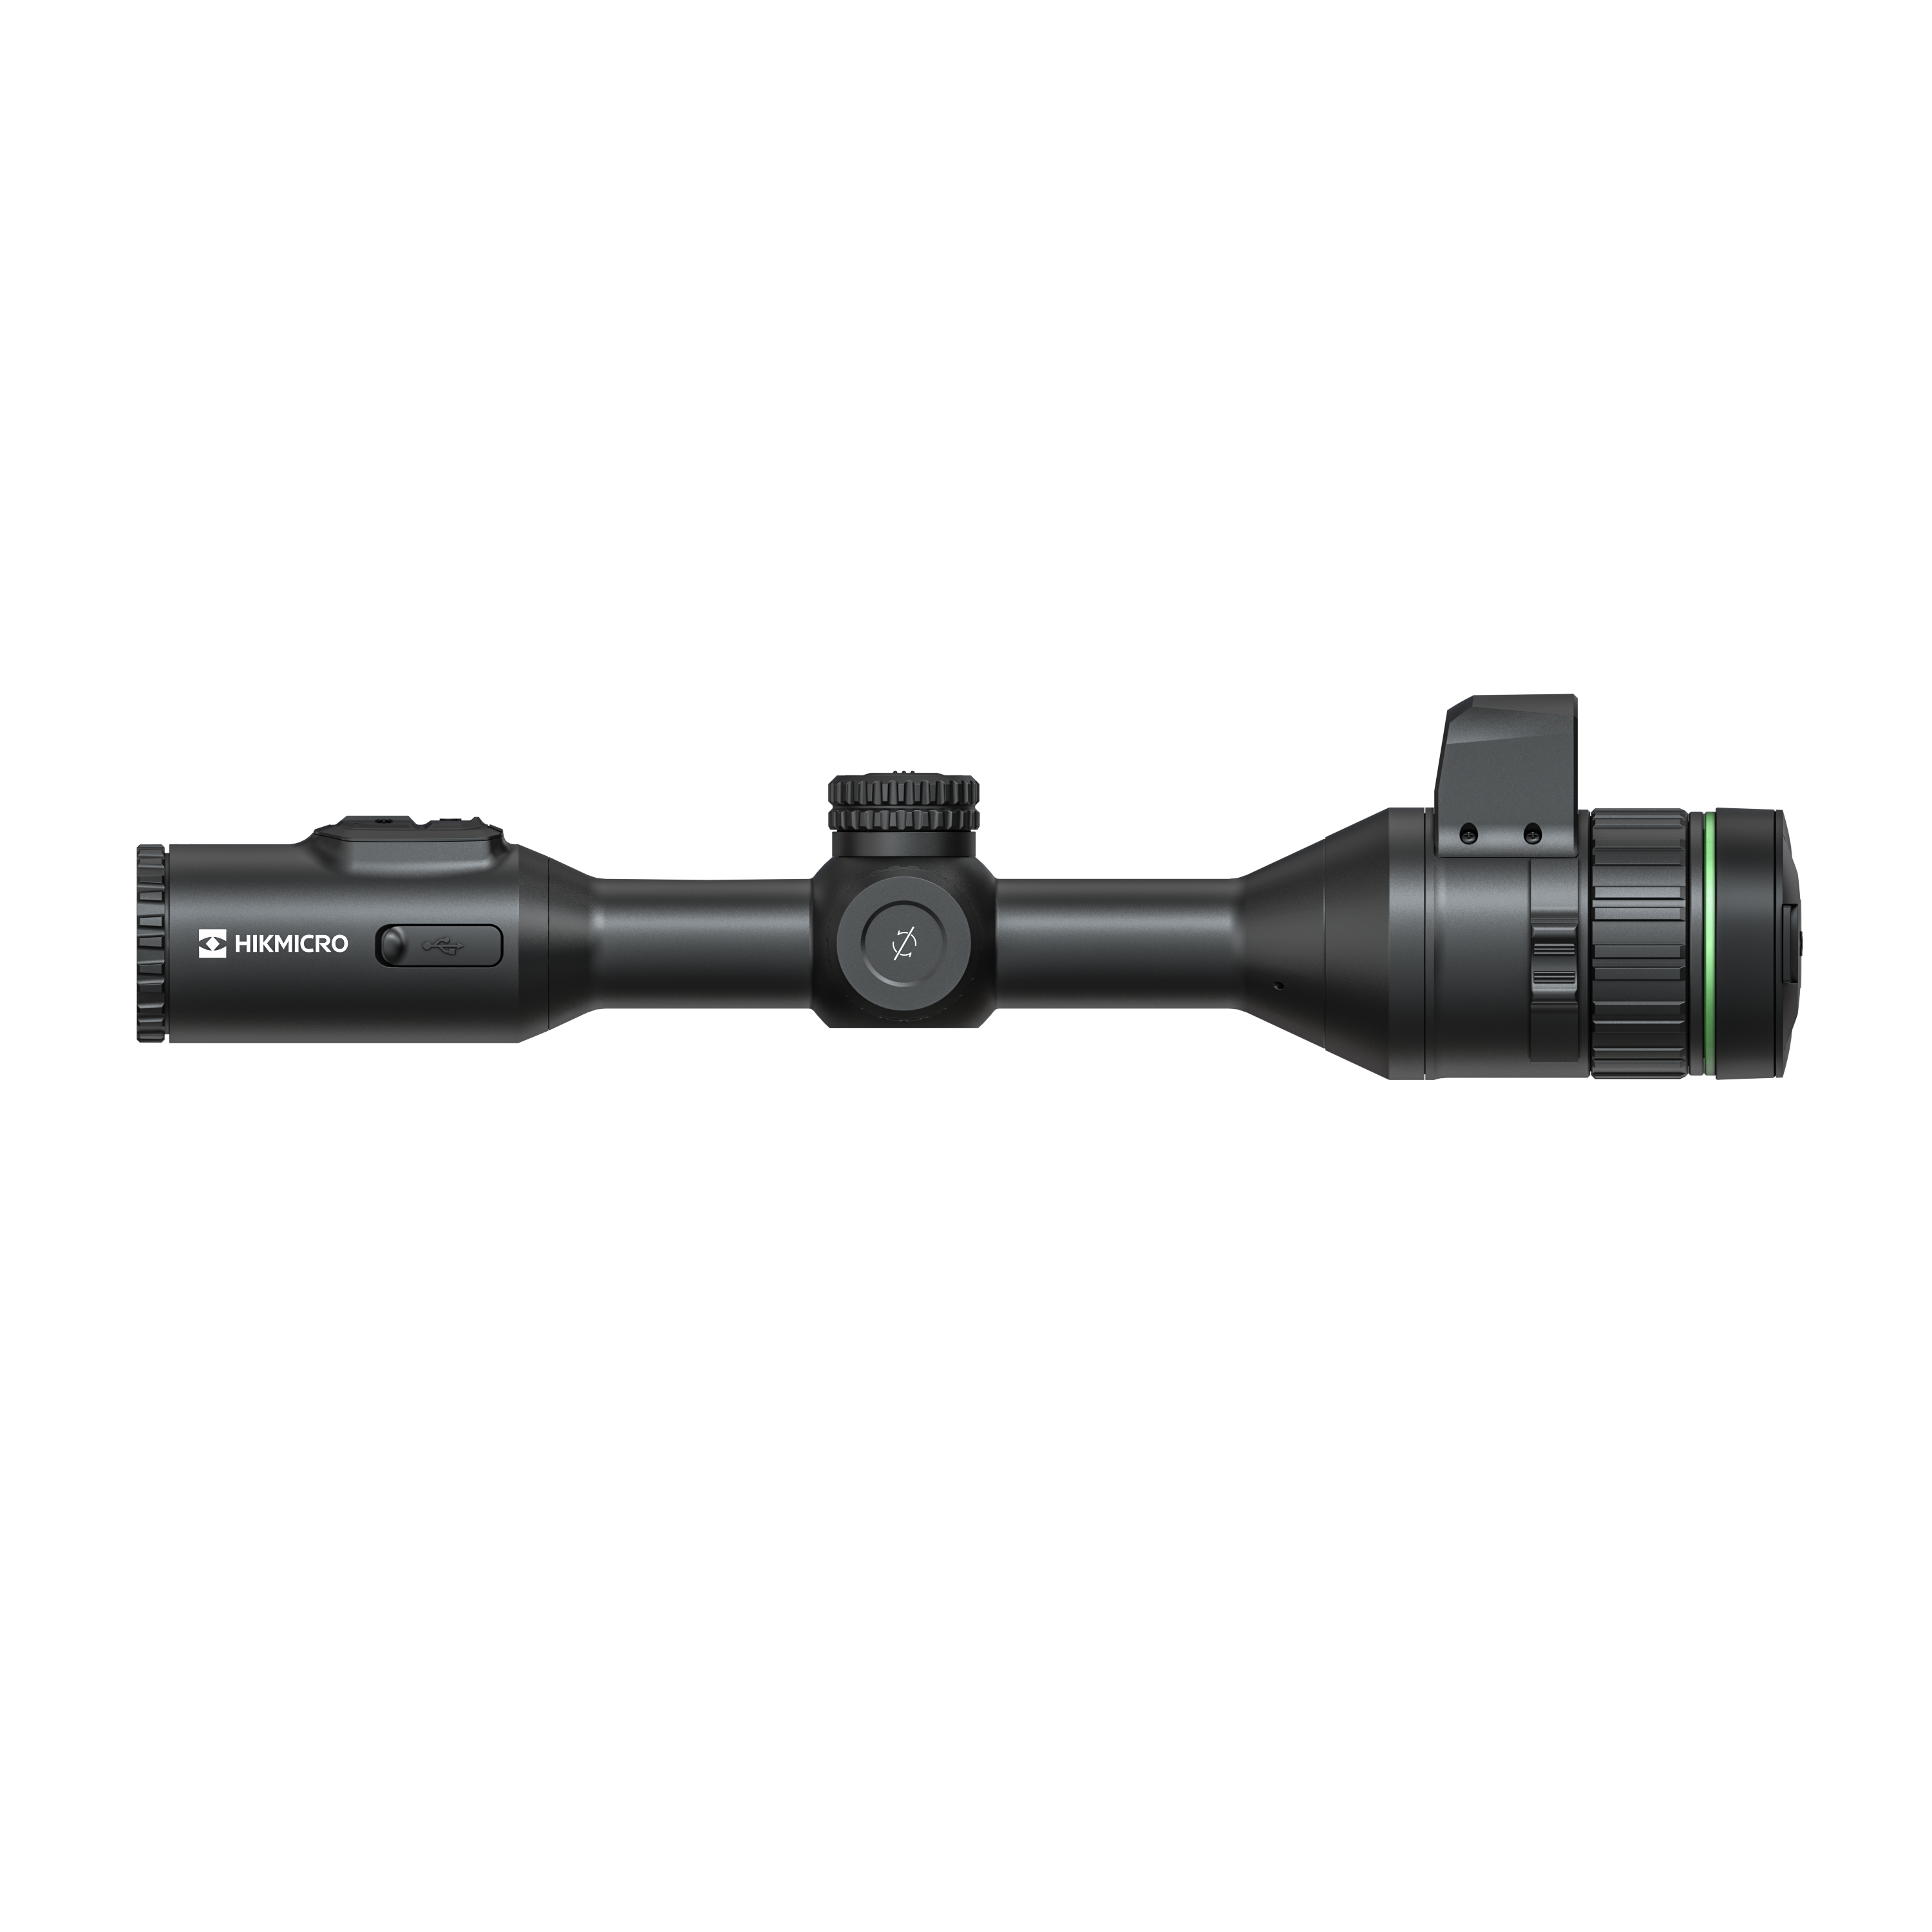 Hikmicro Alpex 4K Digital Rifle Scope with LRF HM-A50EL